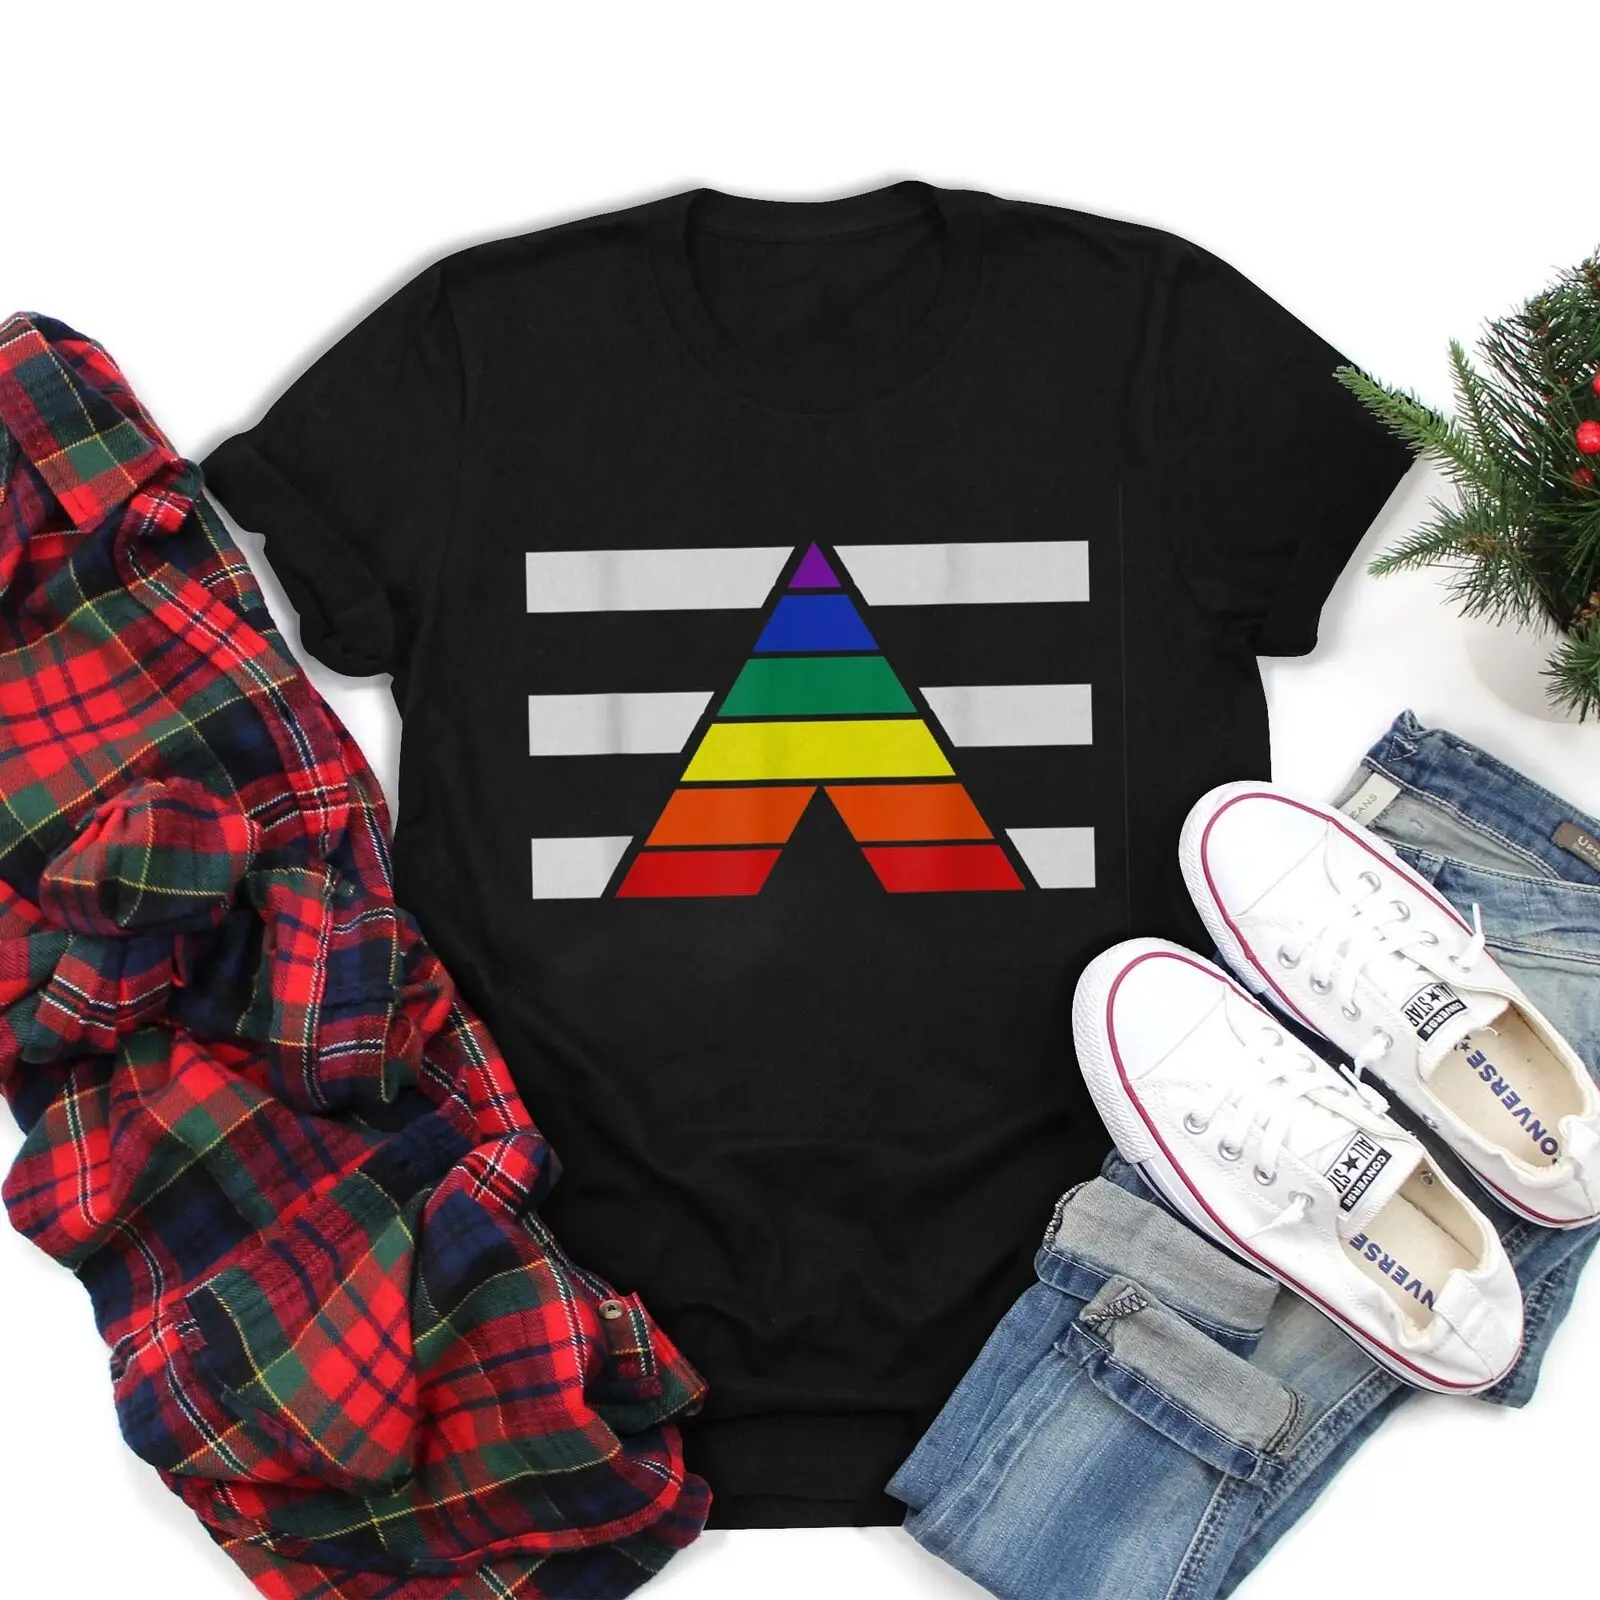 ЛГБТ, гей-Прайд лесбийская бисексуальная трансгендельная футболка,  популярный лучший дизайн, Новинка | AliExpress